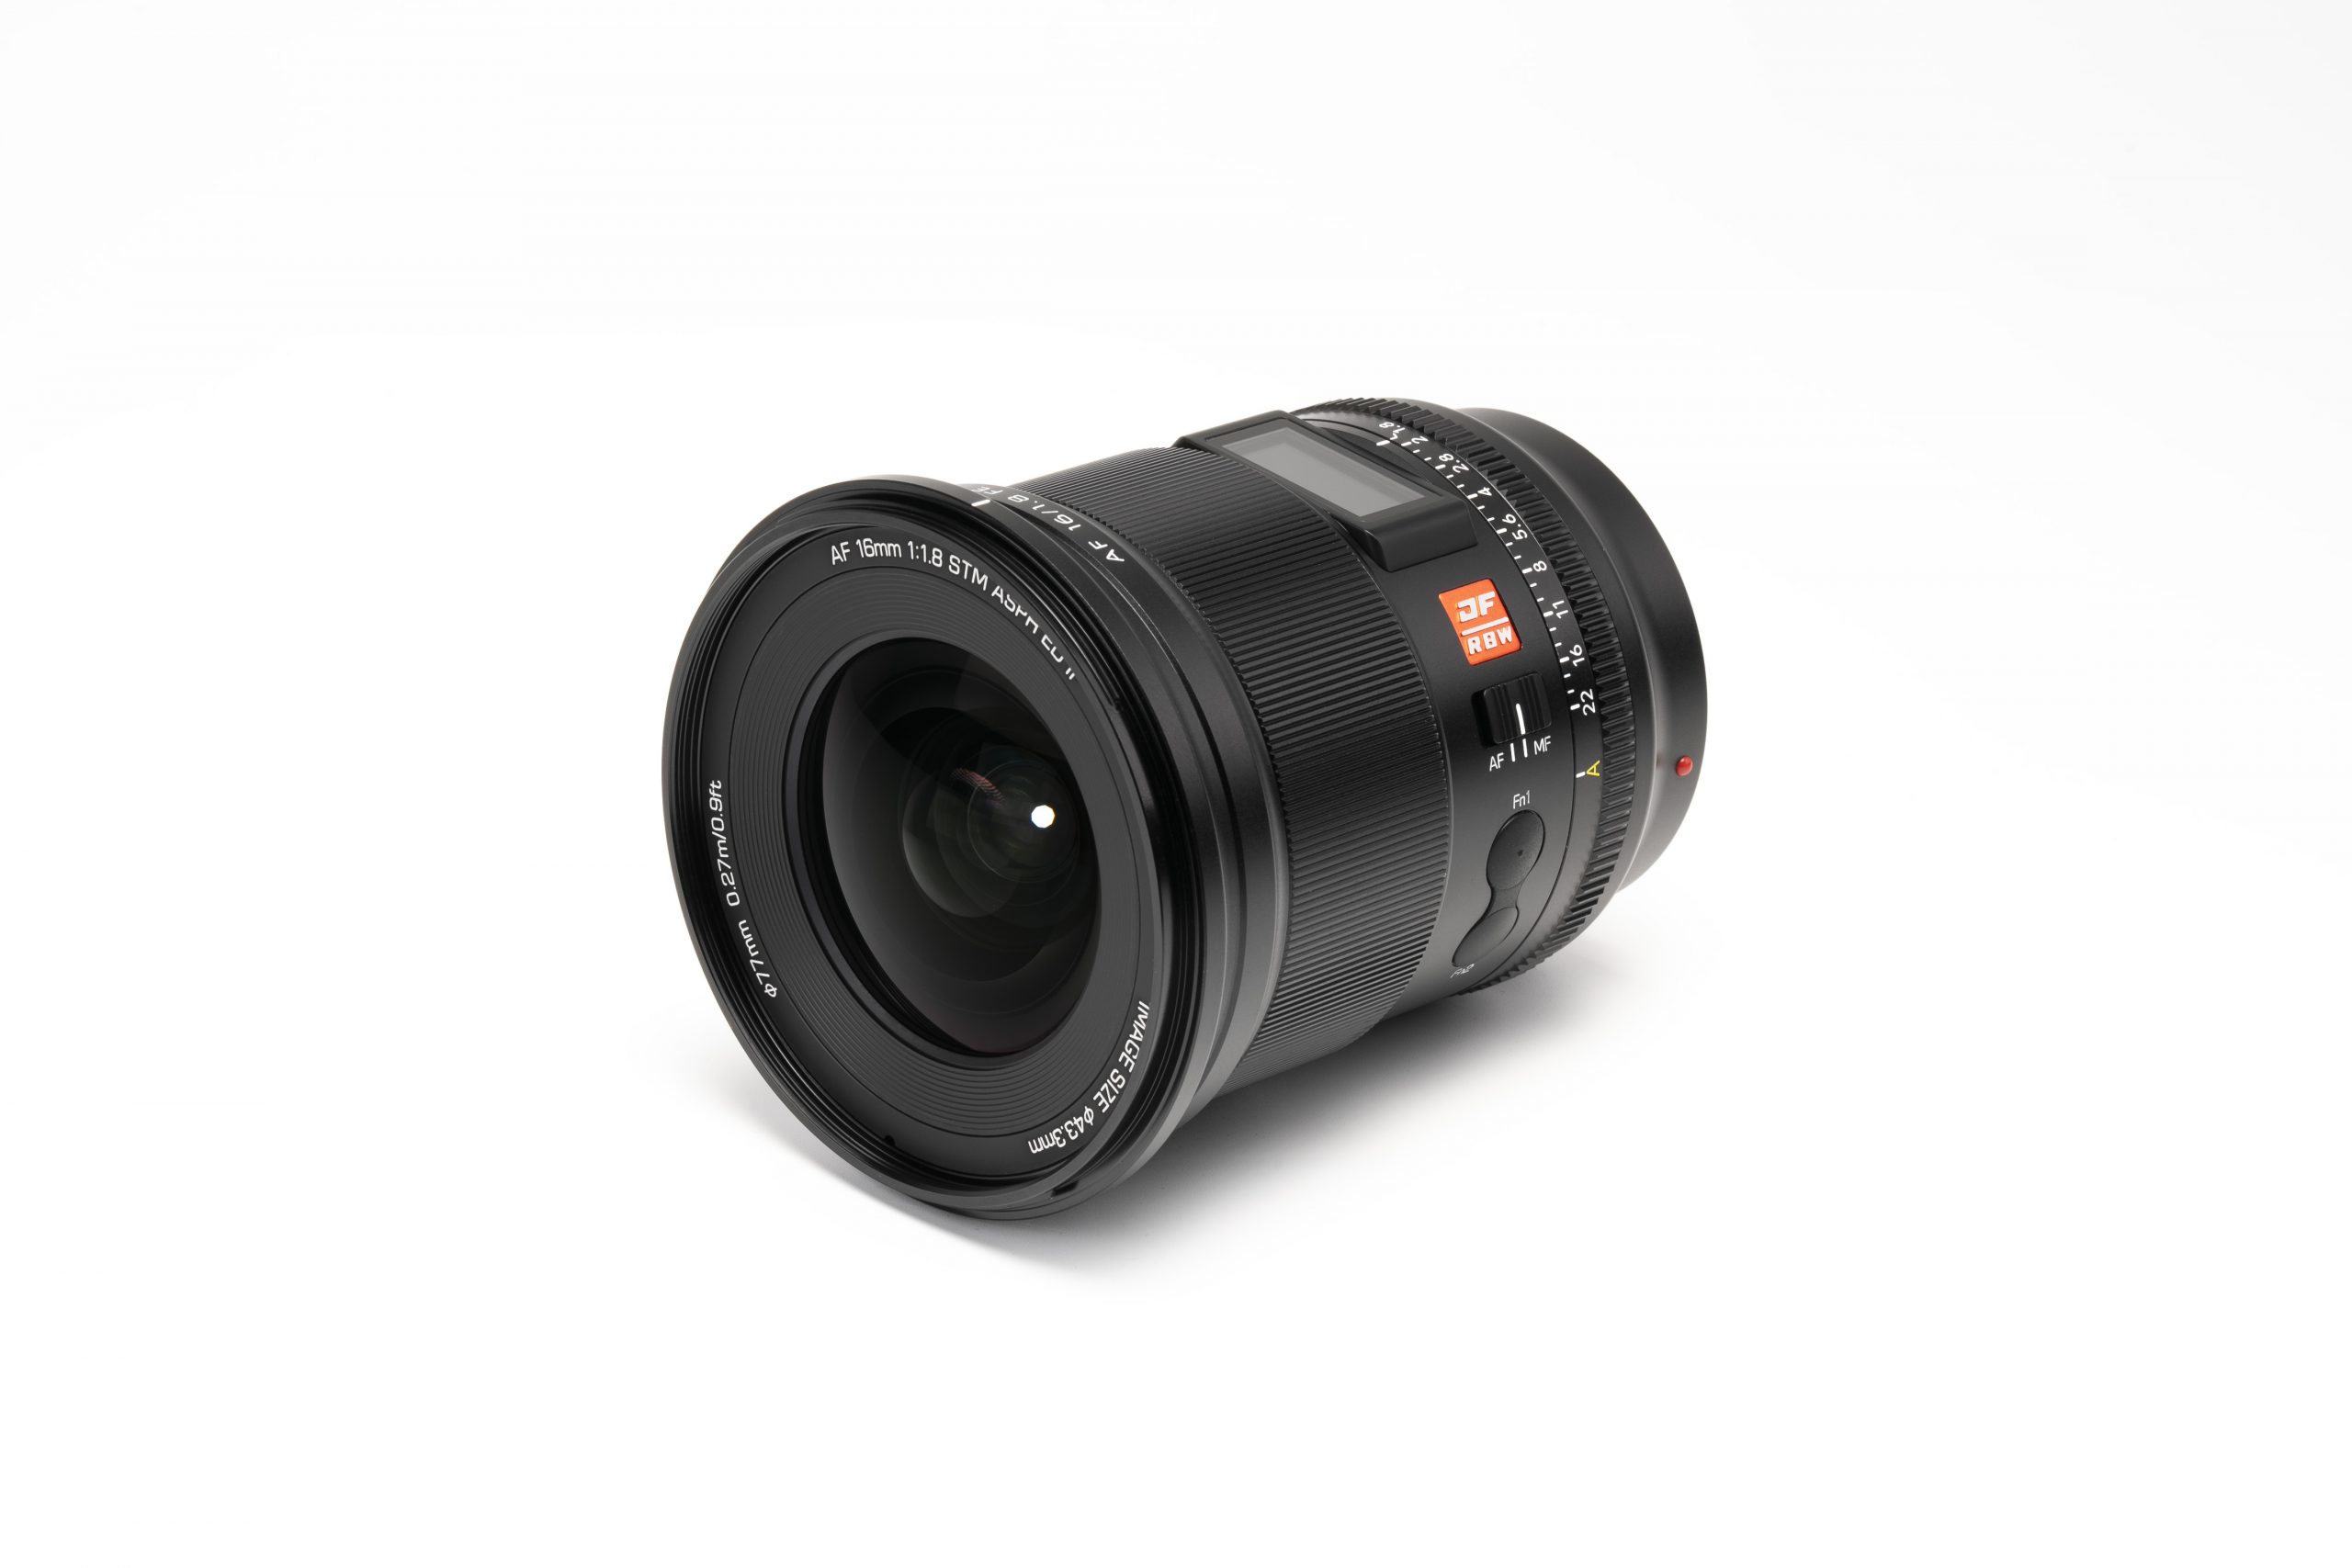 Viltrox AF 16mm f1.8 for Sony Full-Frame E-Mount Cameras Released